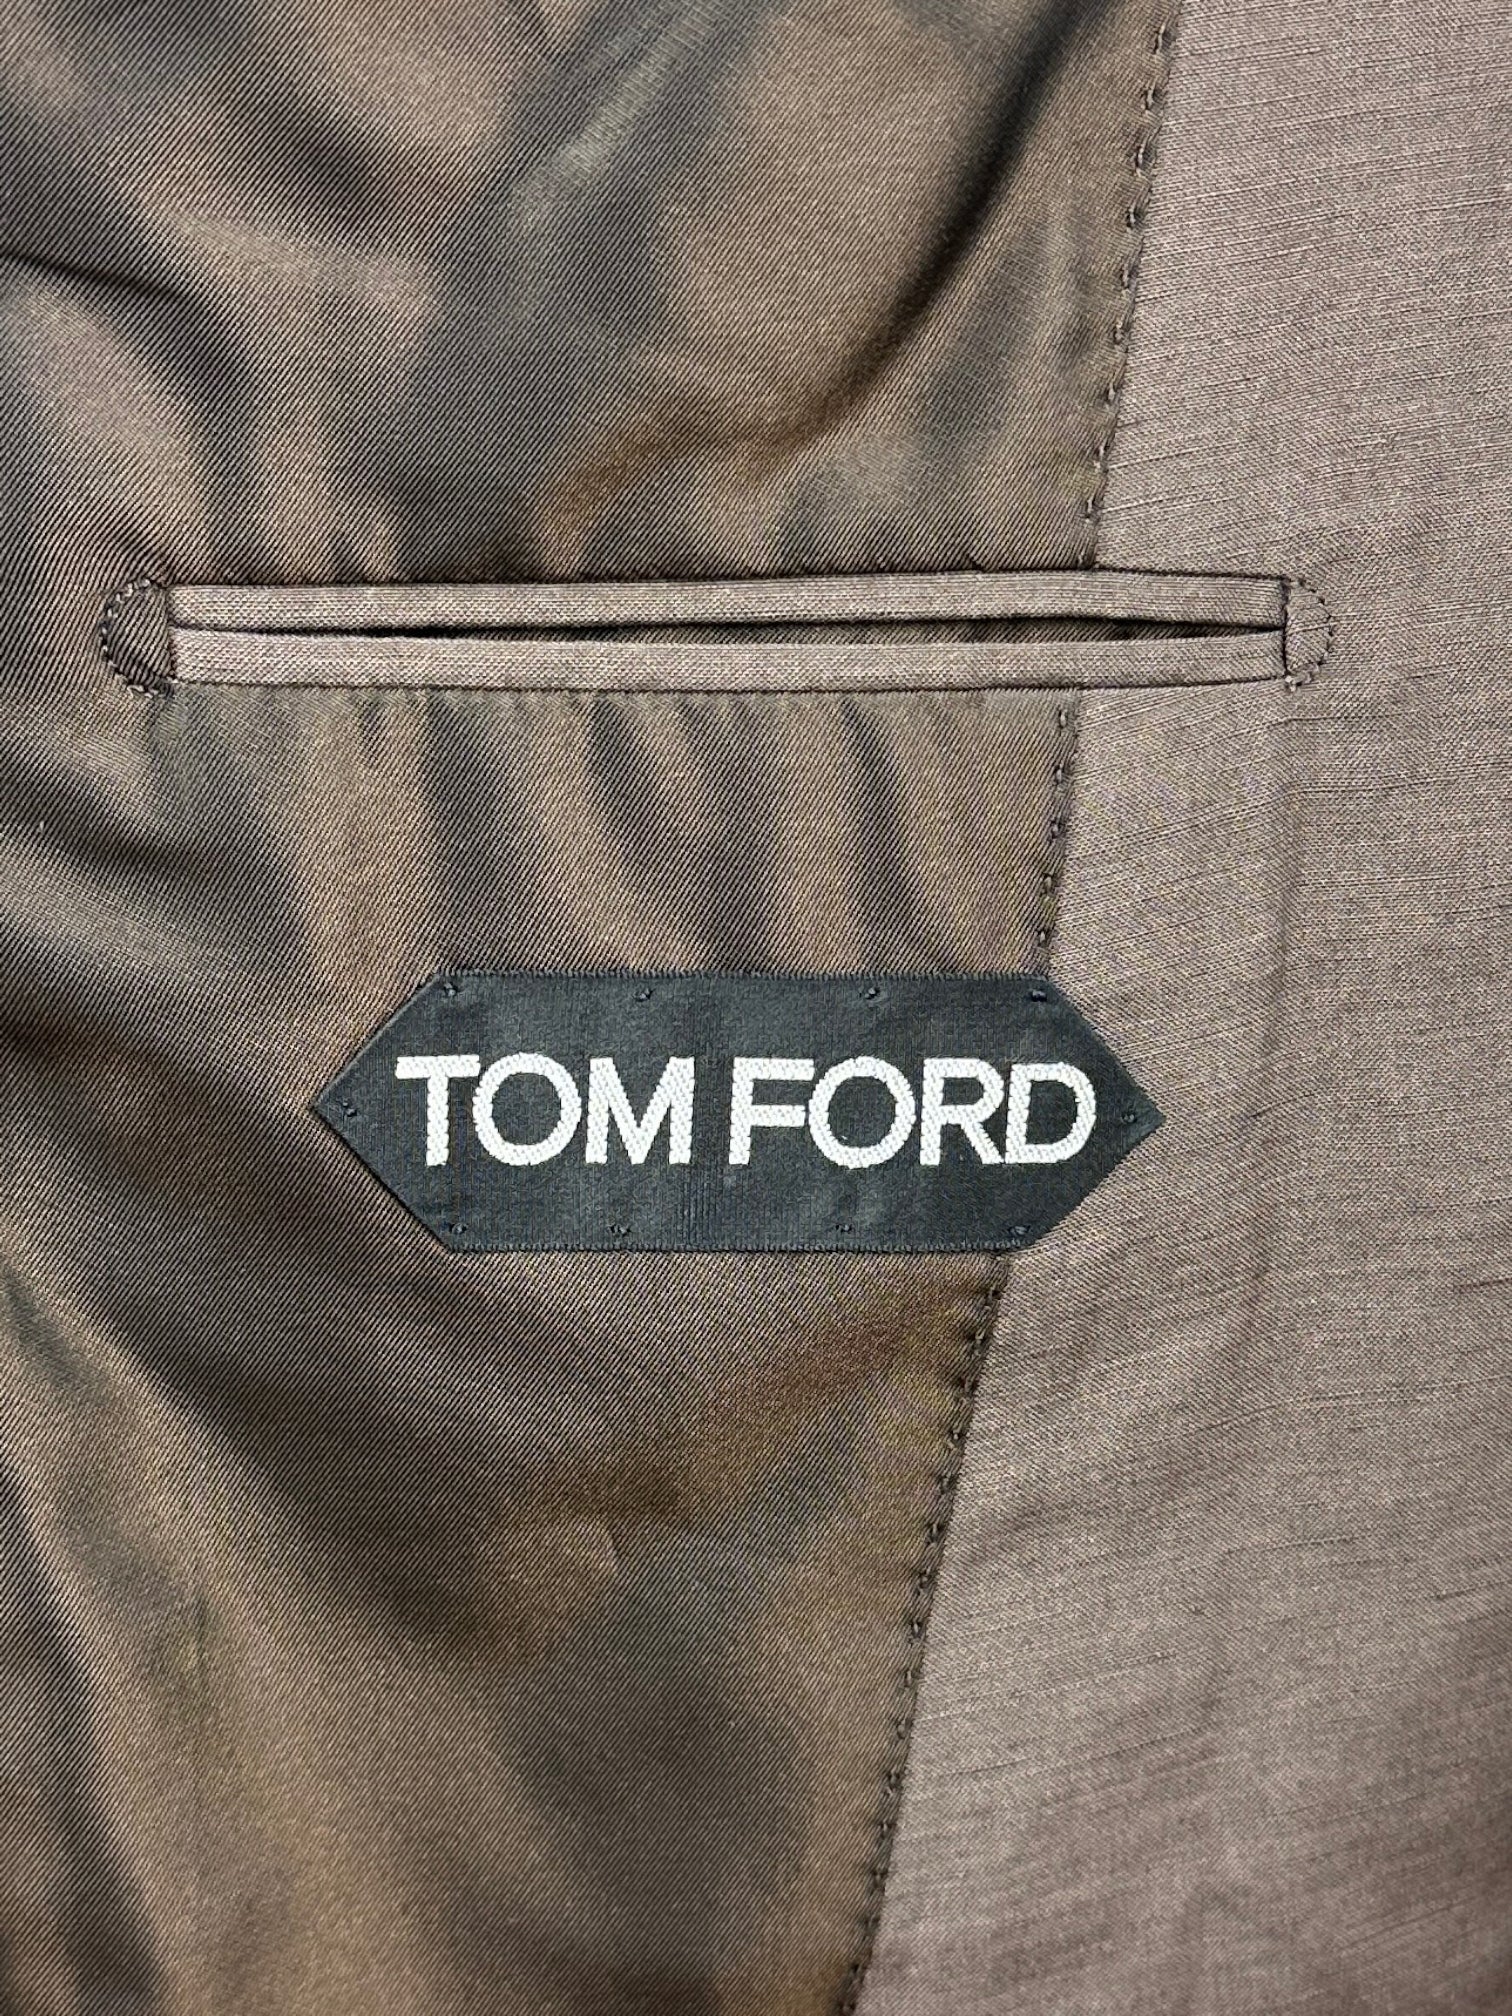 Tom Ford Atticus chocoladebruin zijden en linnen pak